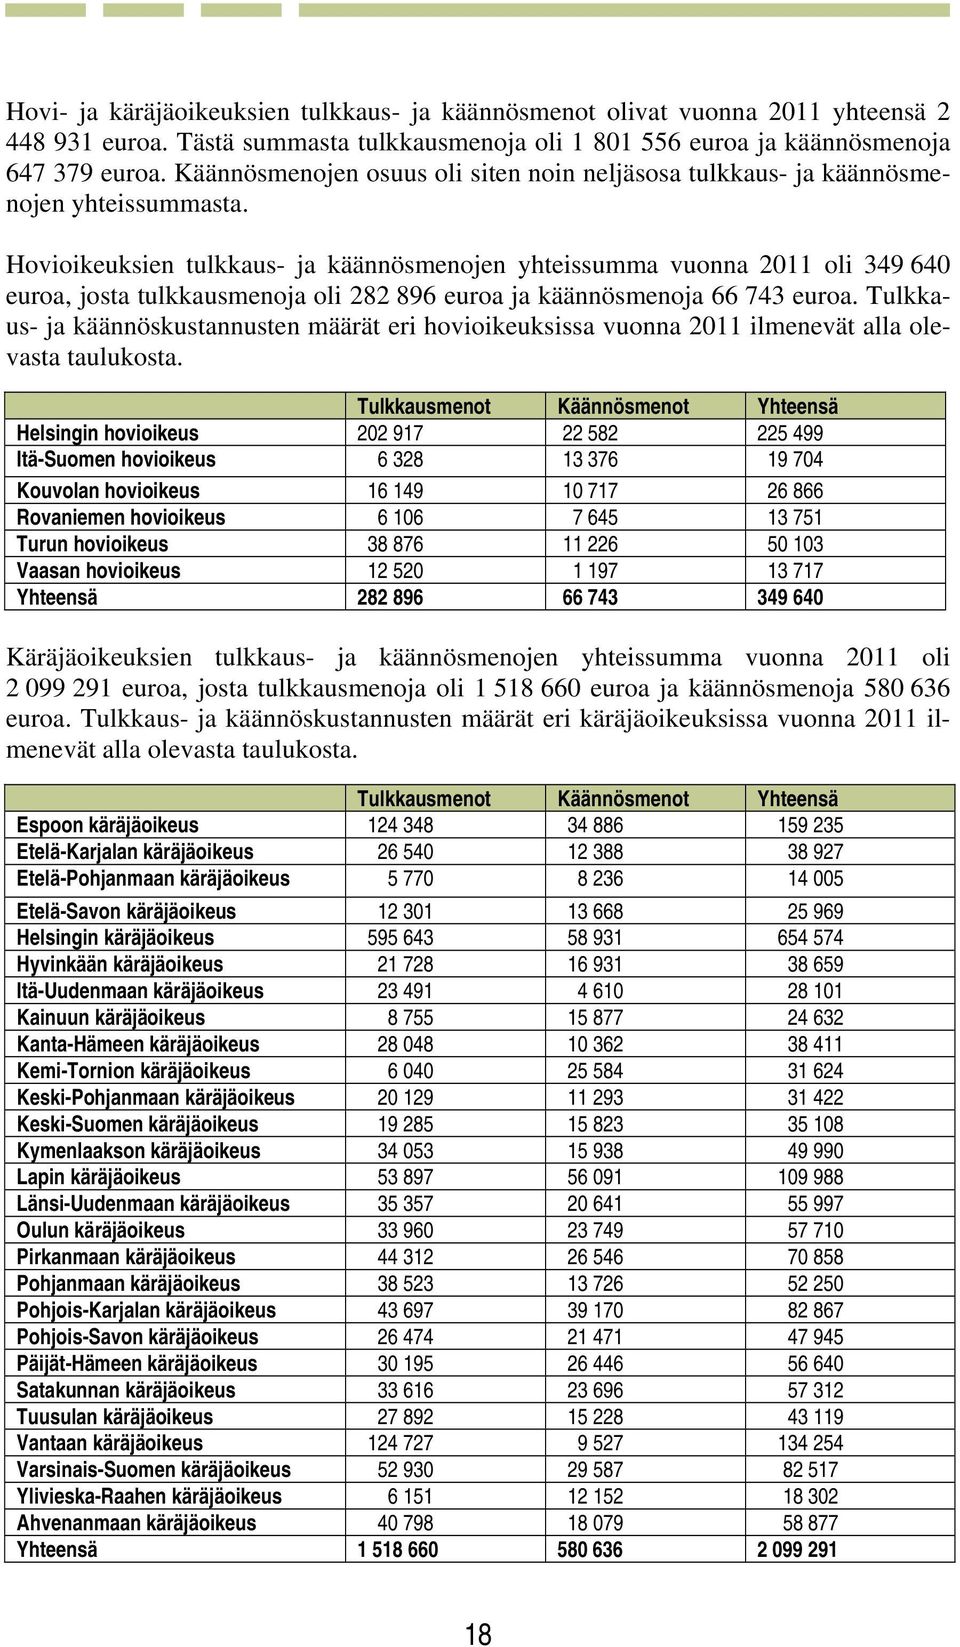 Hovioikeuksien tulkkaus- ja käännösmenojen yhteissumma vuonna 2011 oli 349 640 euroa, josta tulkkausmenoja oli 282 896 euroa ja käännösmenoja 66 743 euroa.